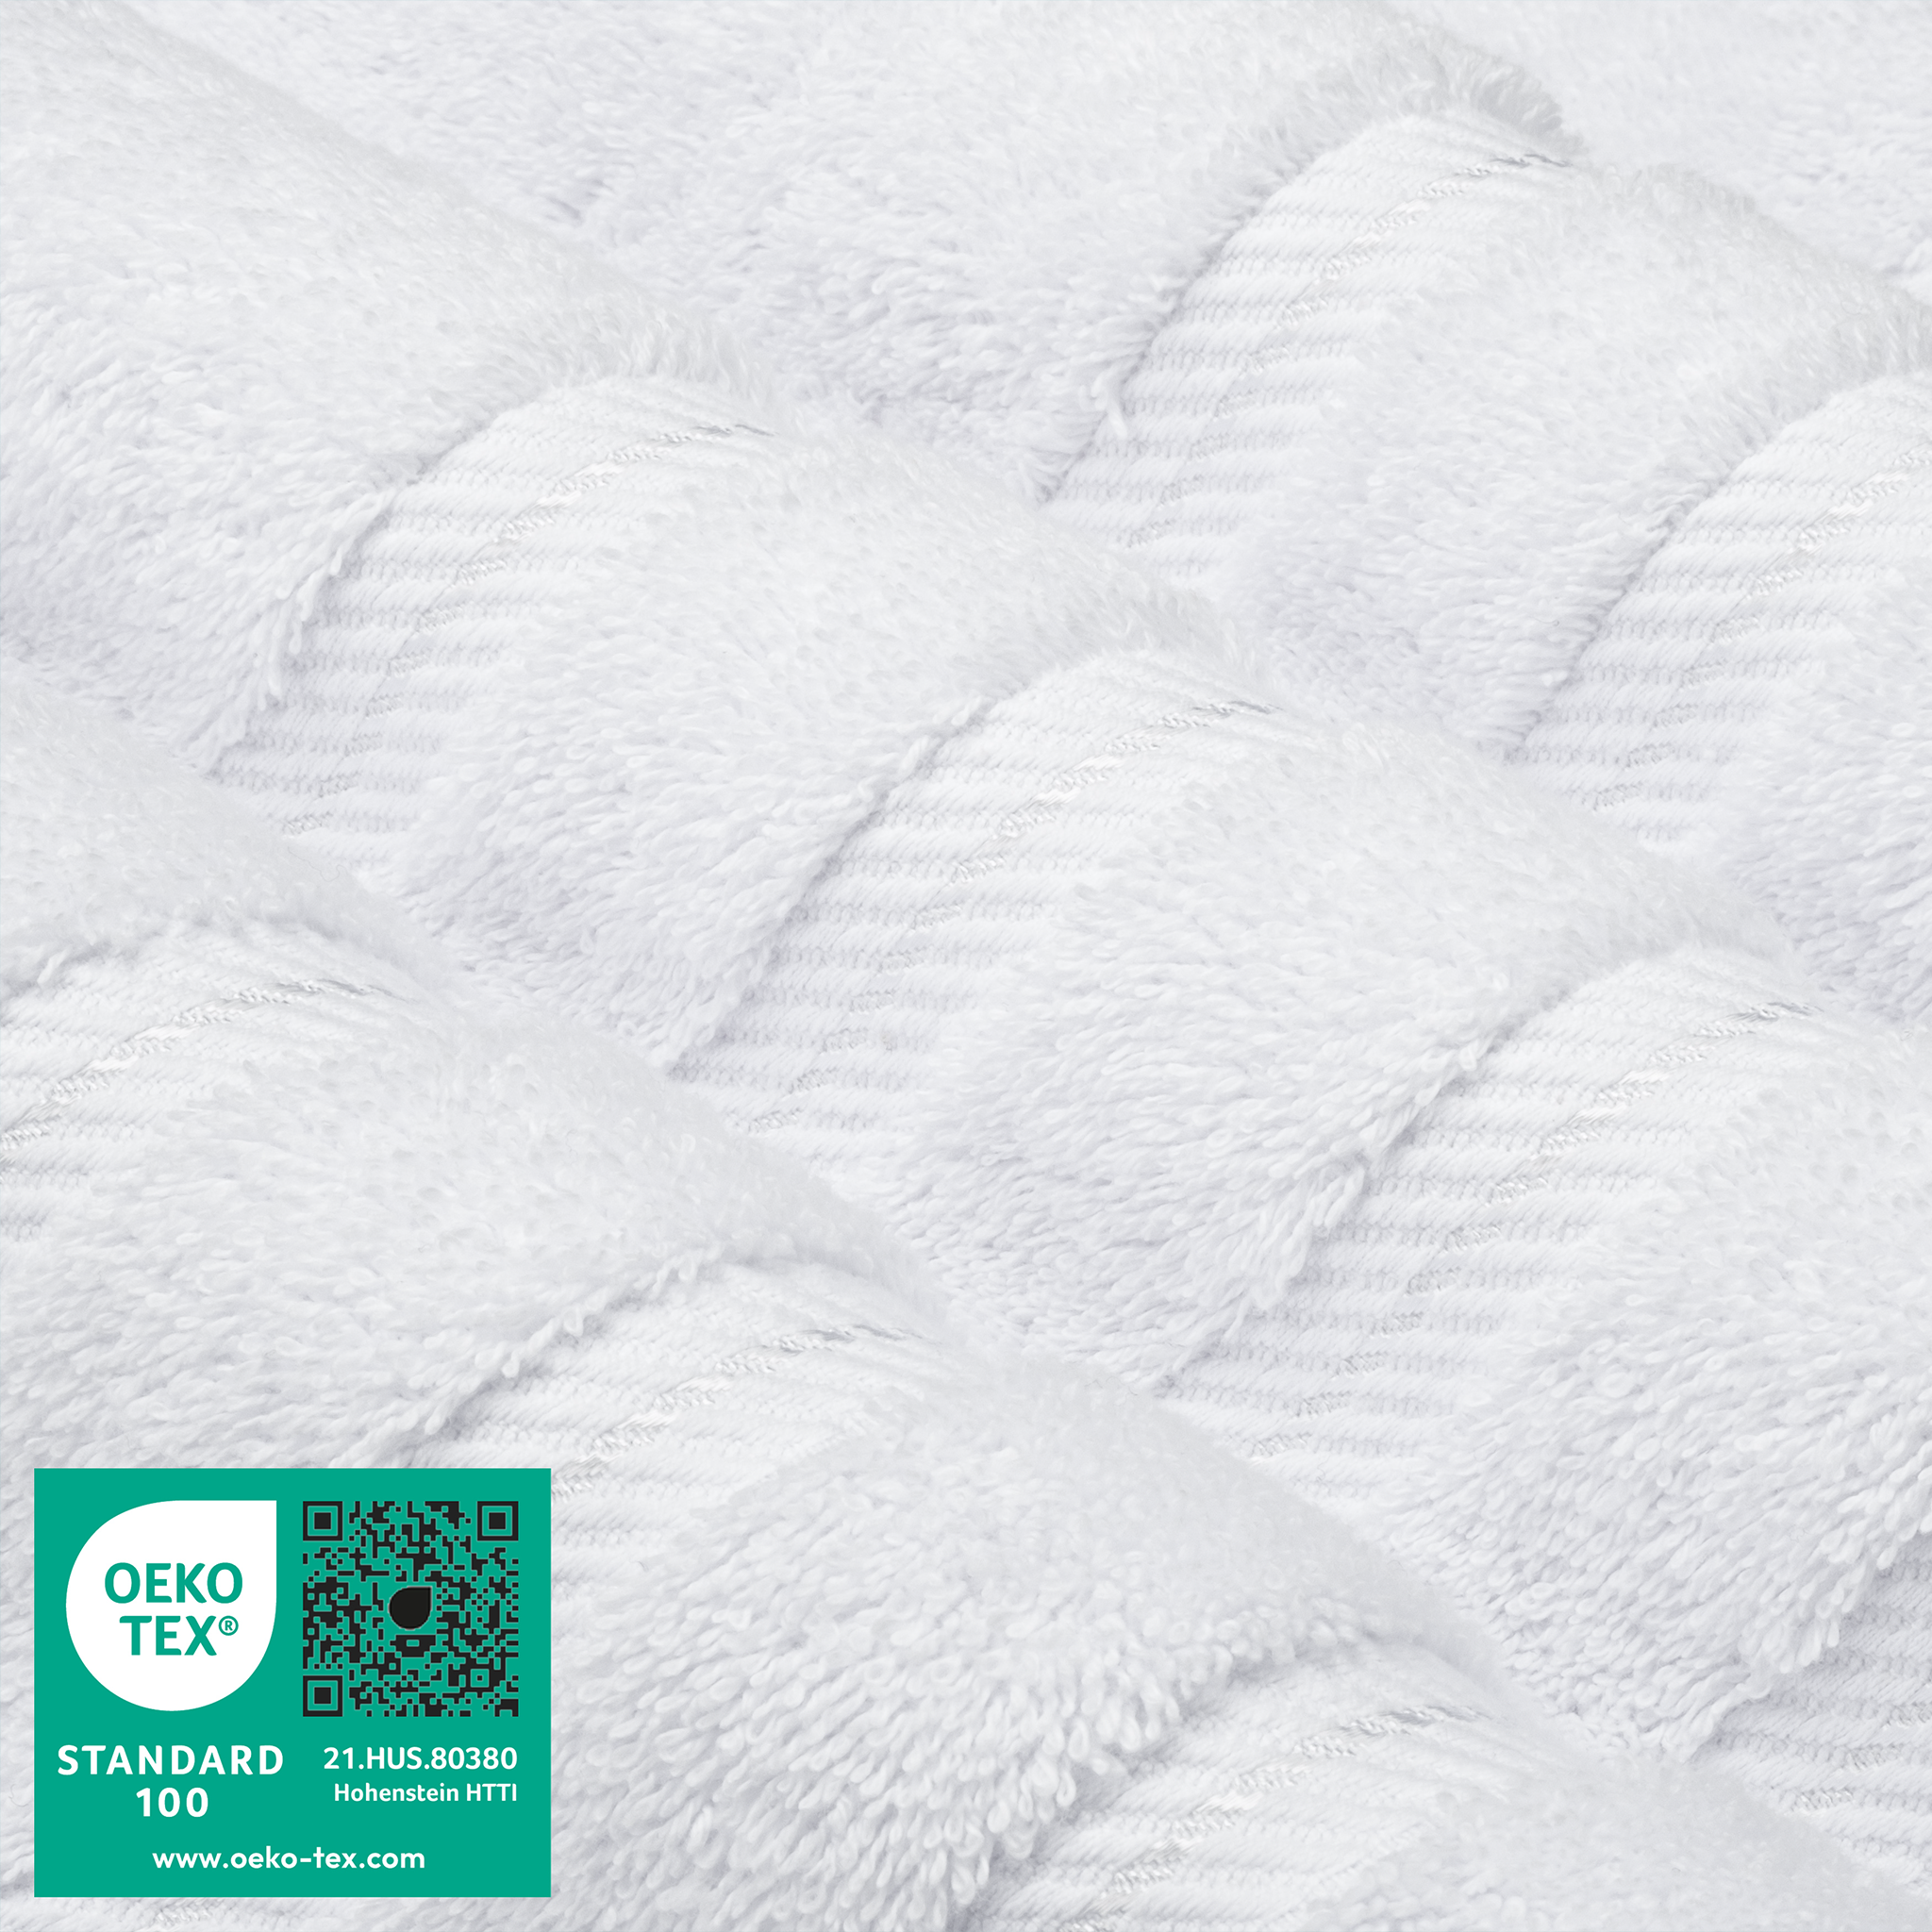 35x70 inch Bath Sheet 100% Turkish Cotton-16 Piece Case Pack White